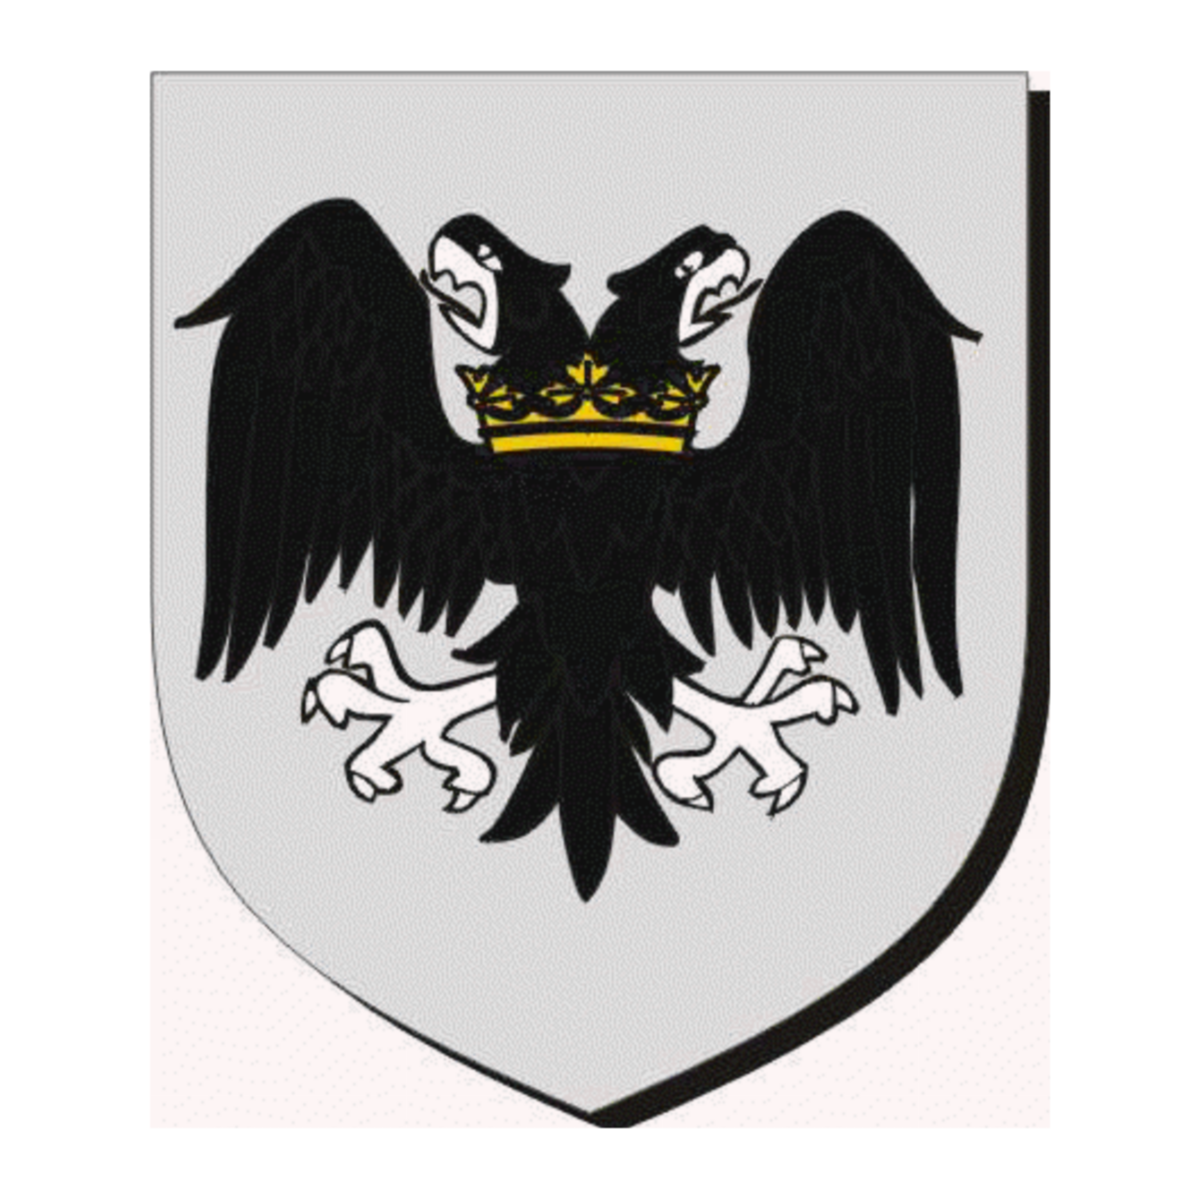 Wappen der FamilieGarland